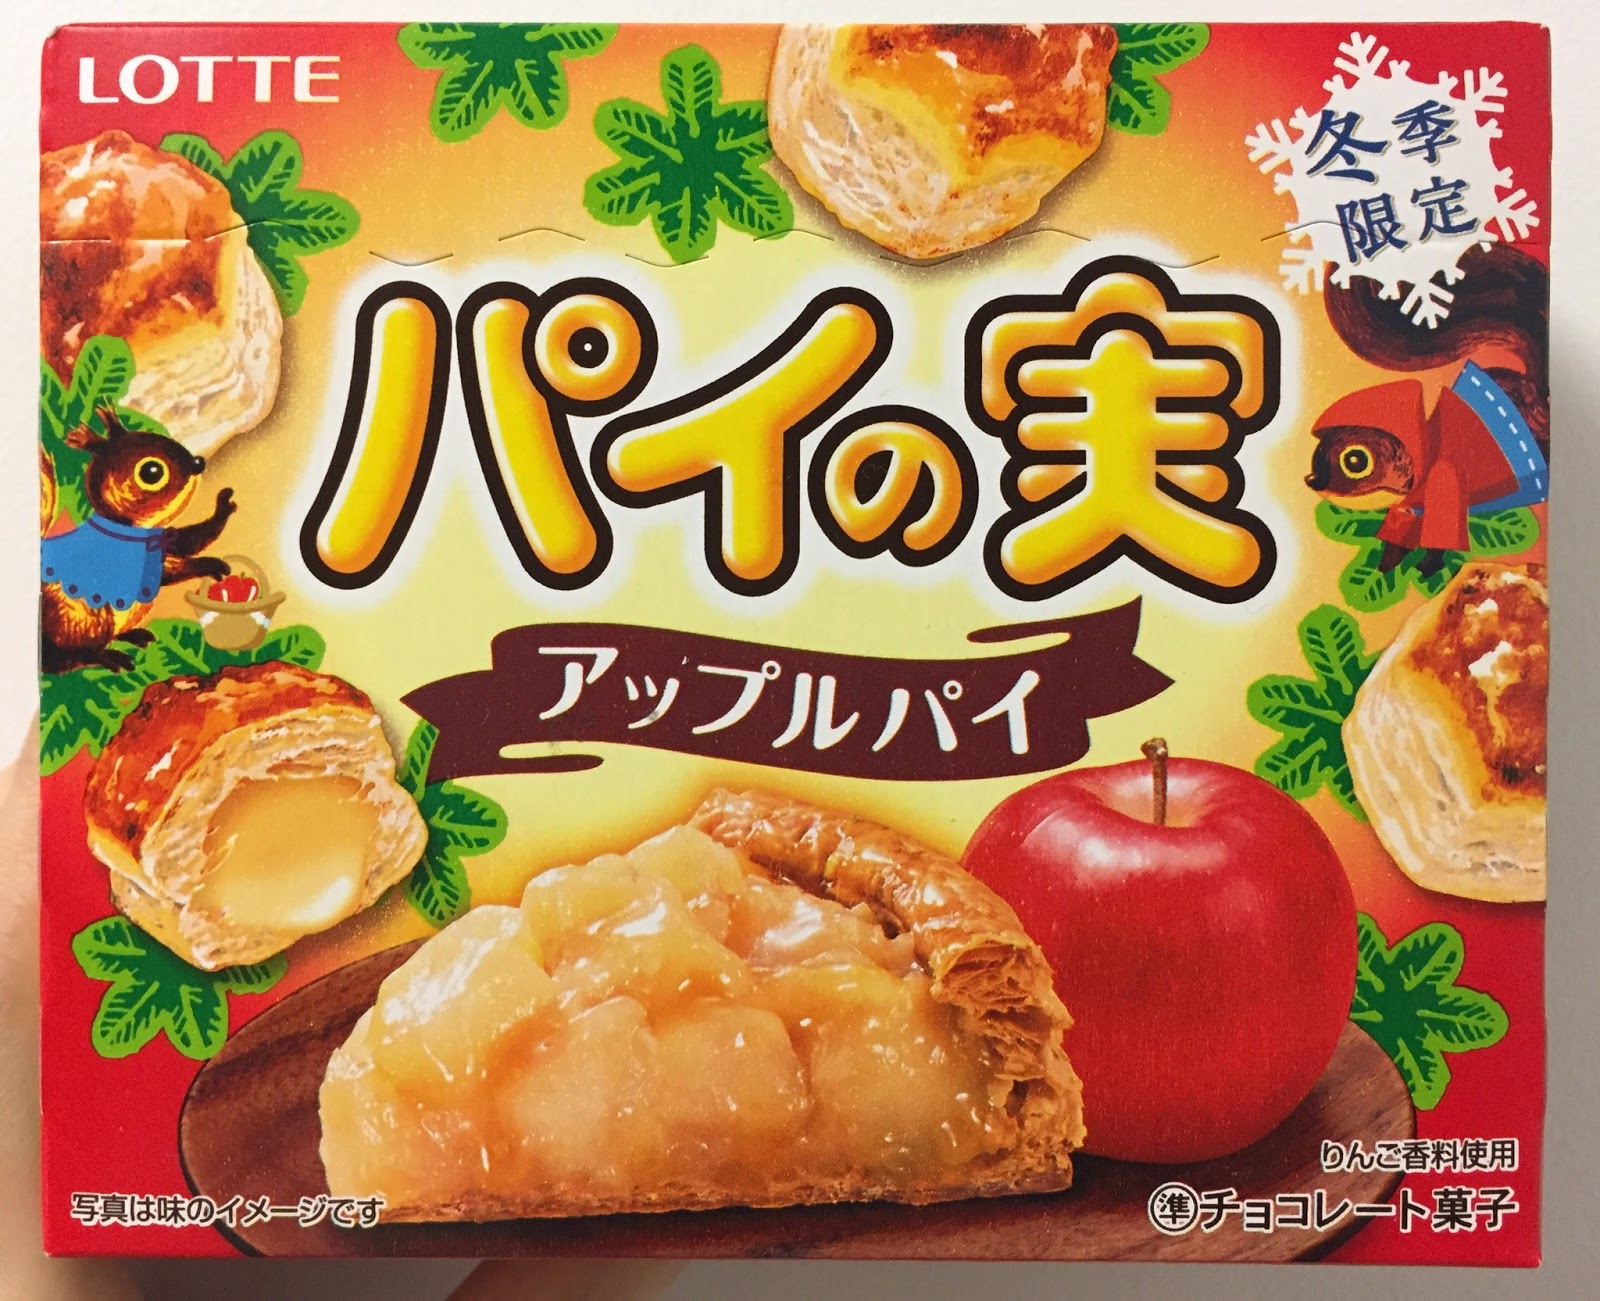 I M Made Of Sugar Chihiro S Food Blog Pai No Mi Apple Pie パイの実 アップル パイ